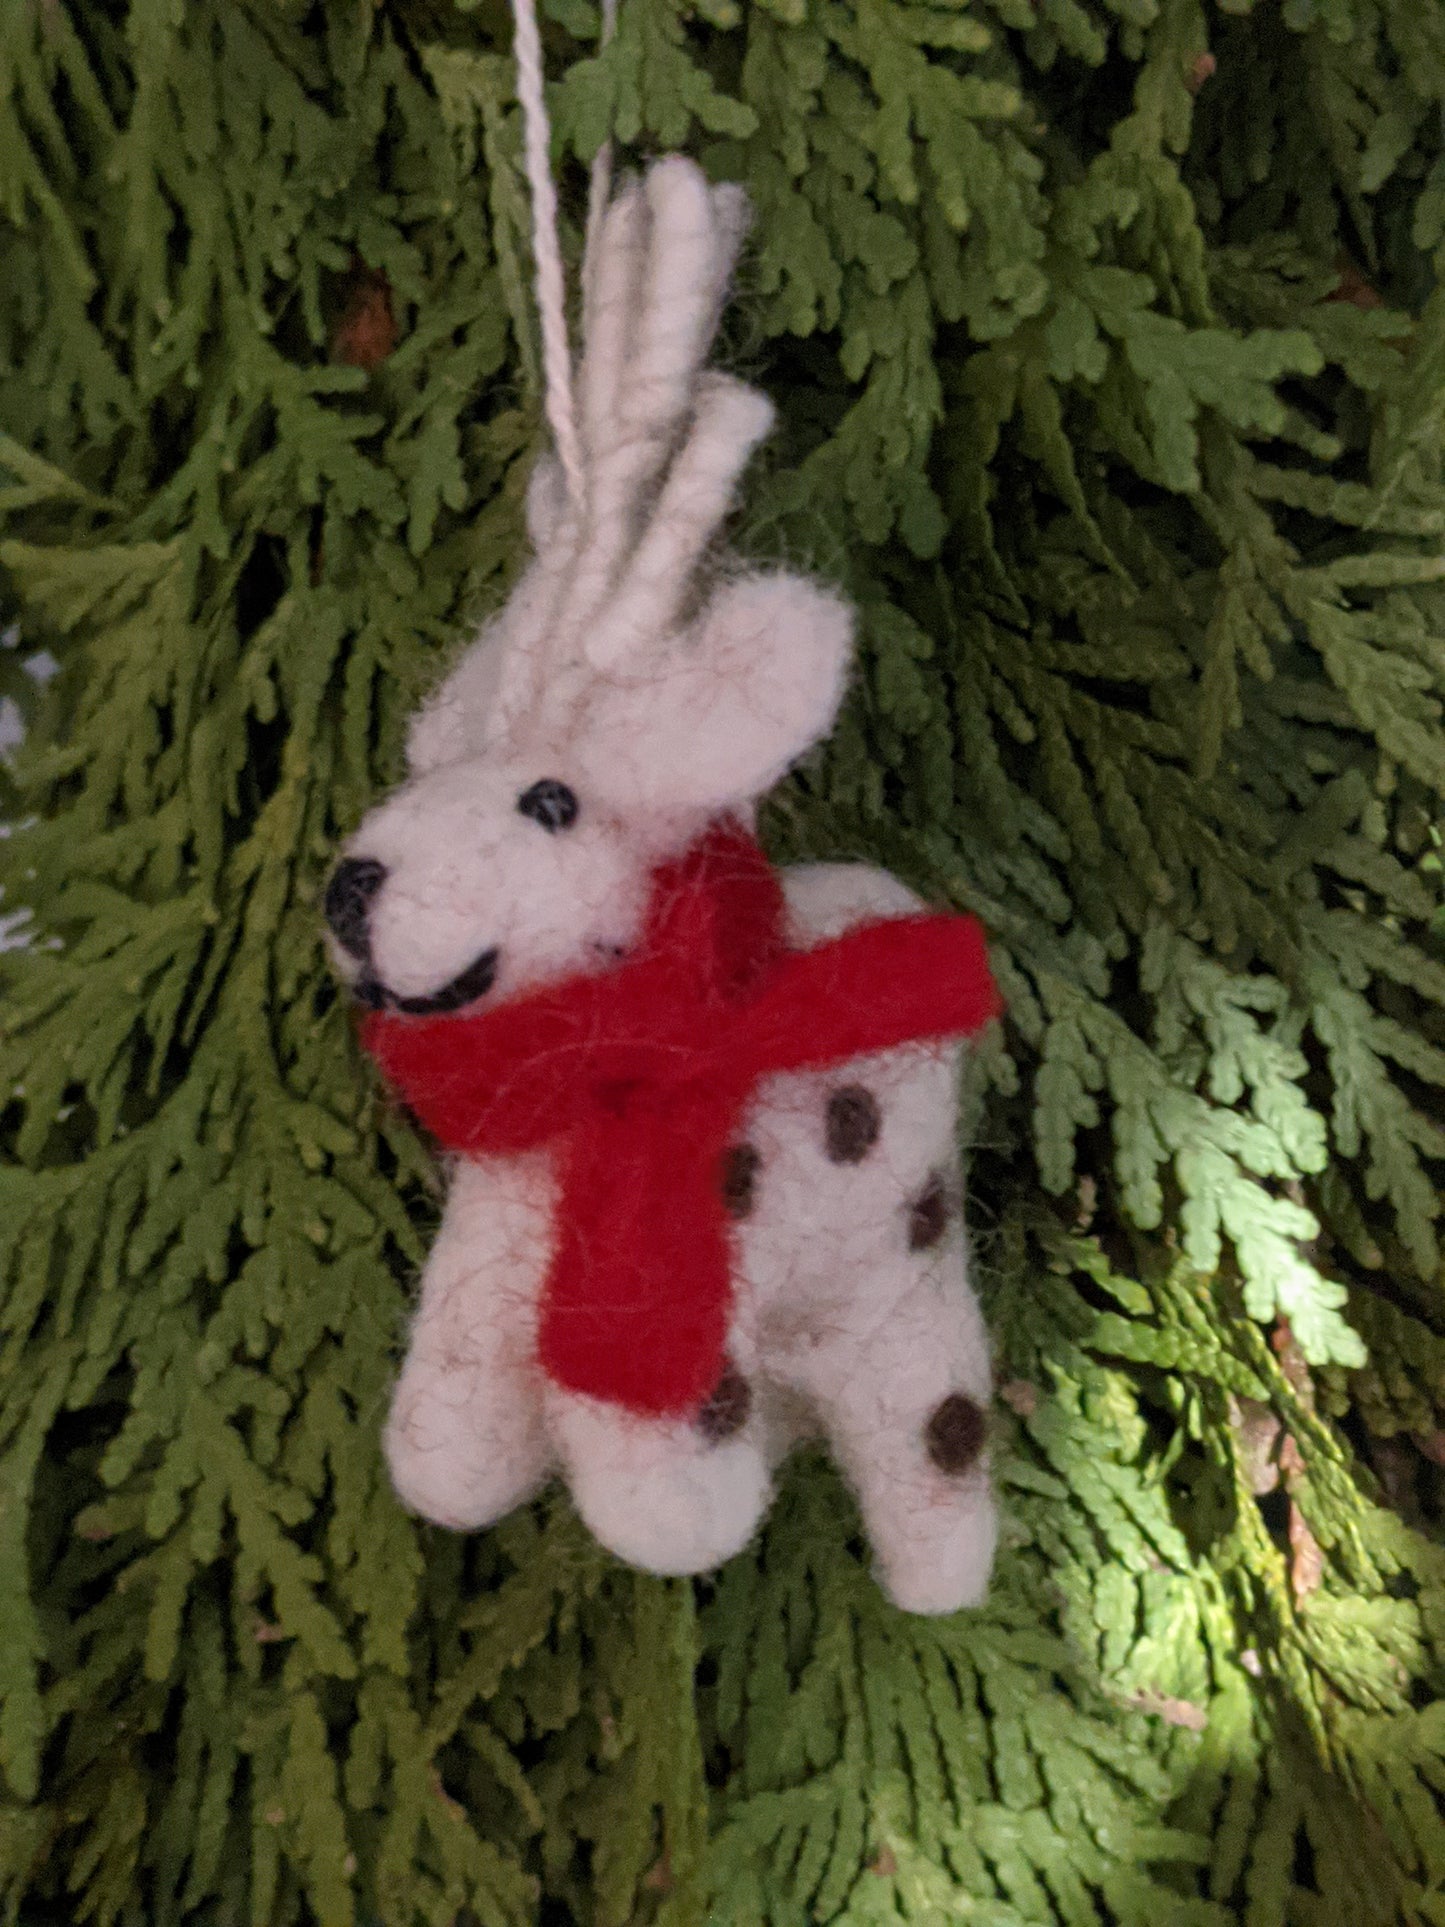 Felt Reindeer Ornament